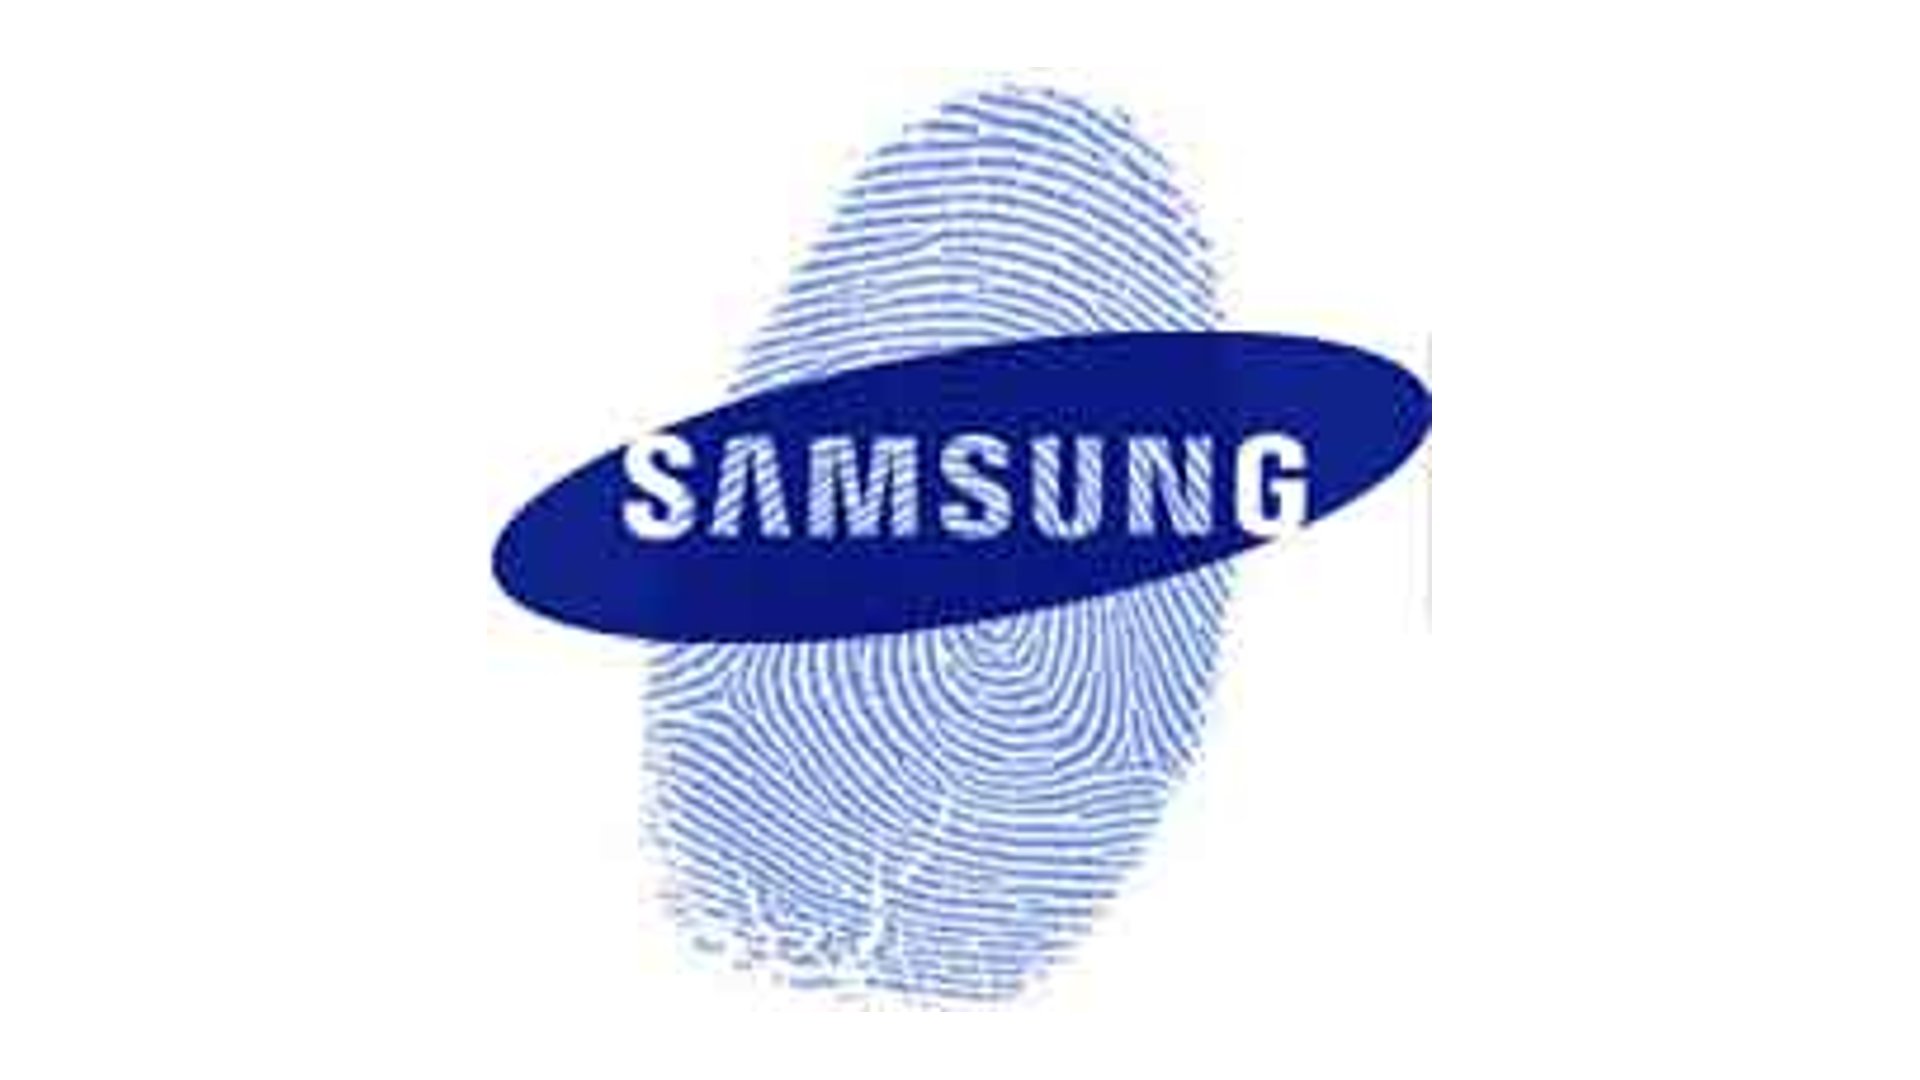 Samsung Fingerprint Scanner Patents